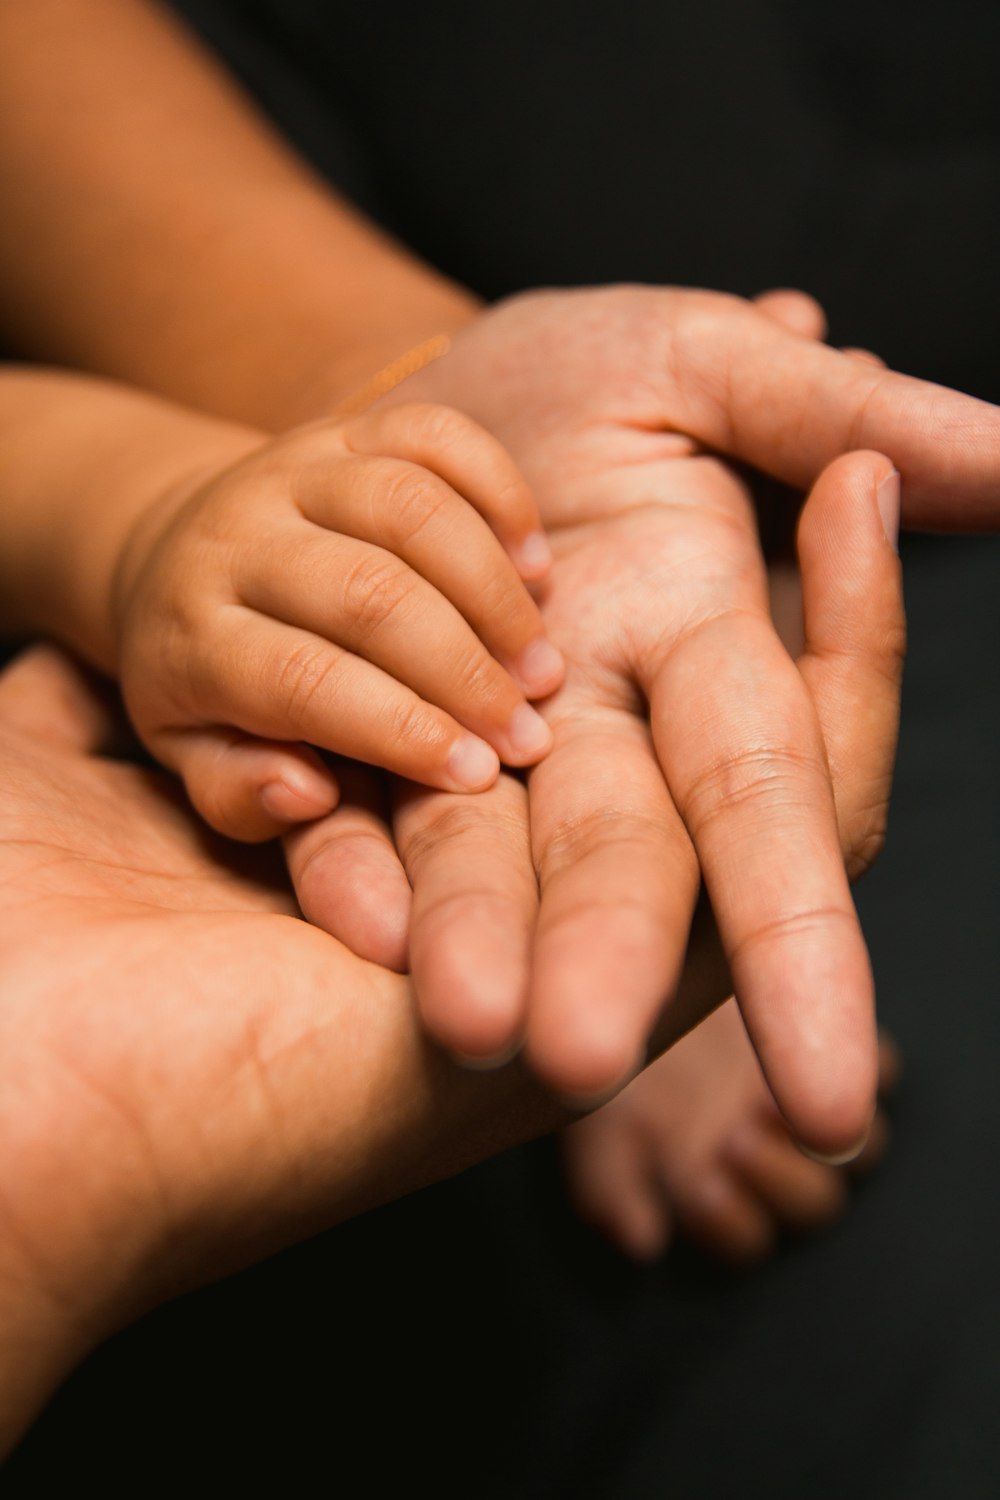 La mano de las personas en la mano del bebé